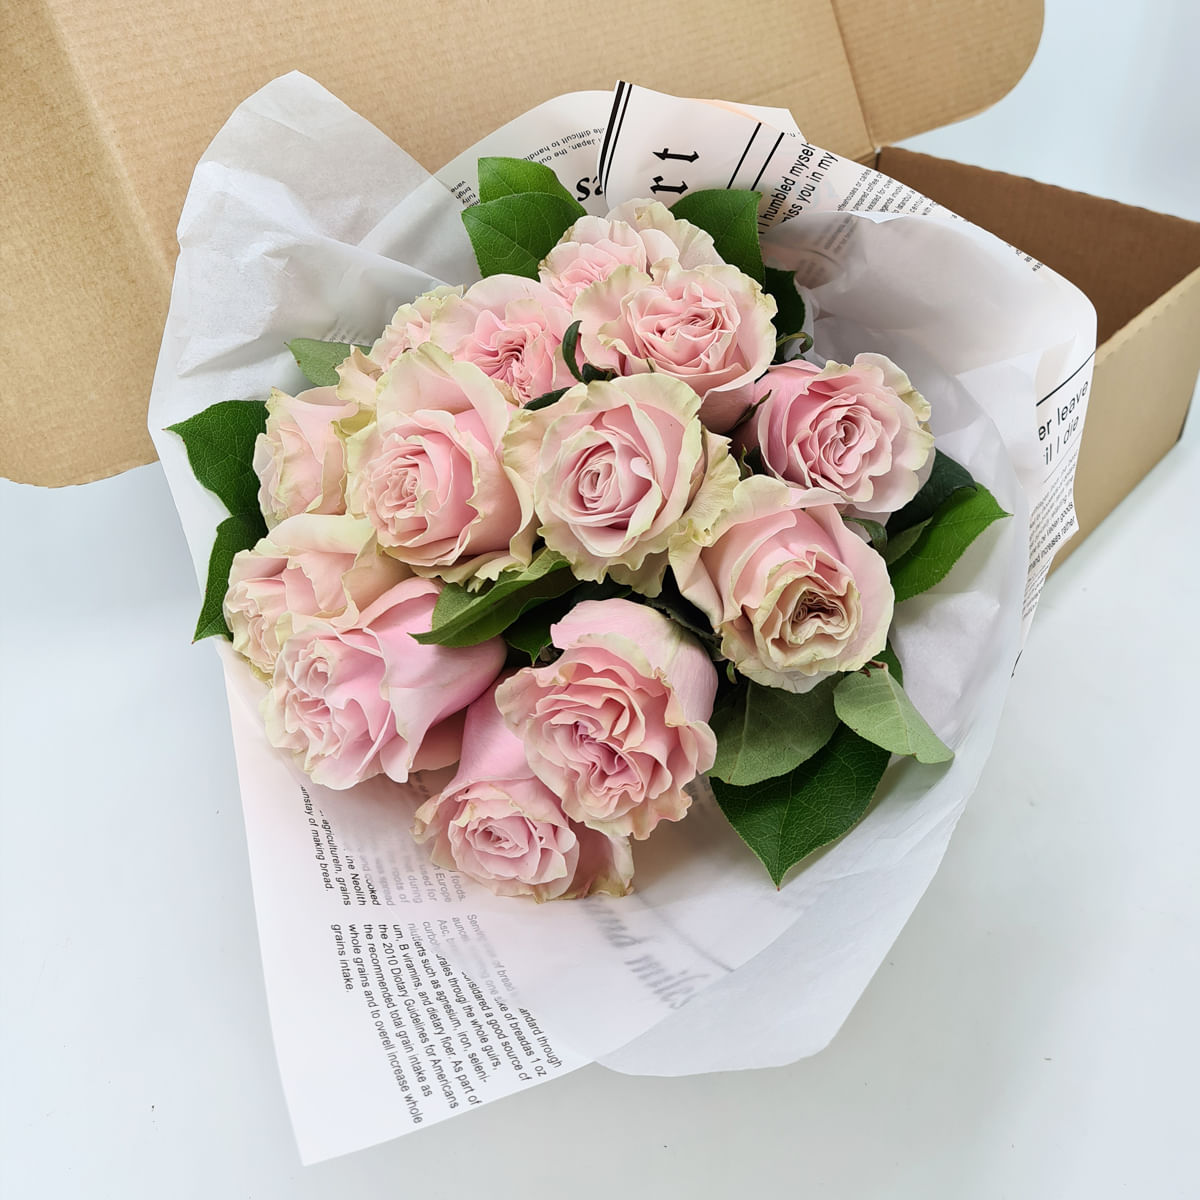 Buchet de 13 trandafiri roz in cutie Floria